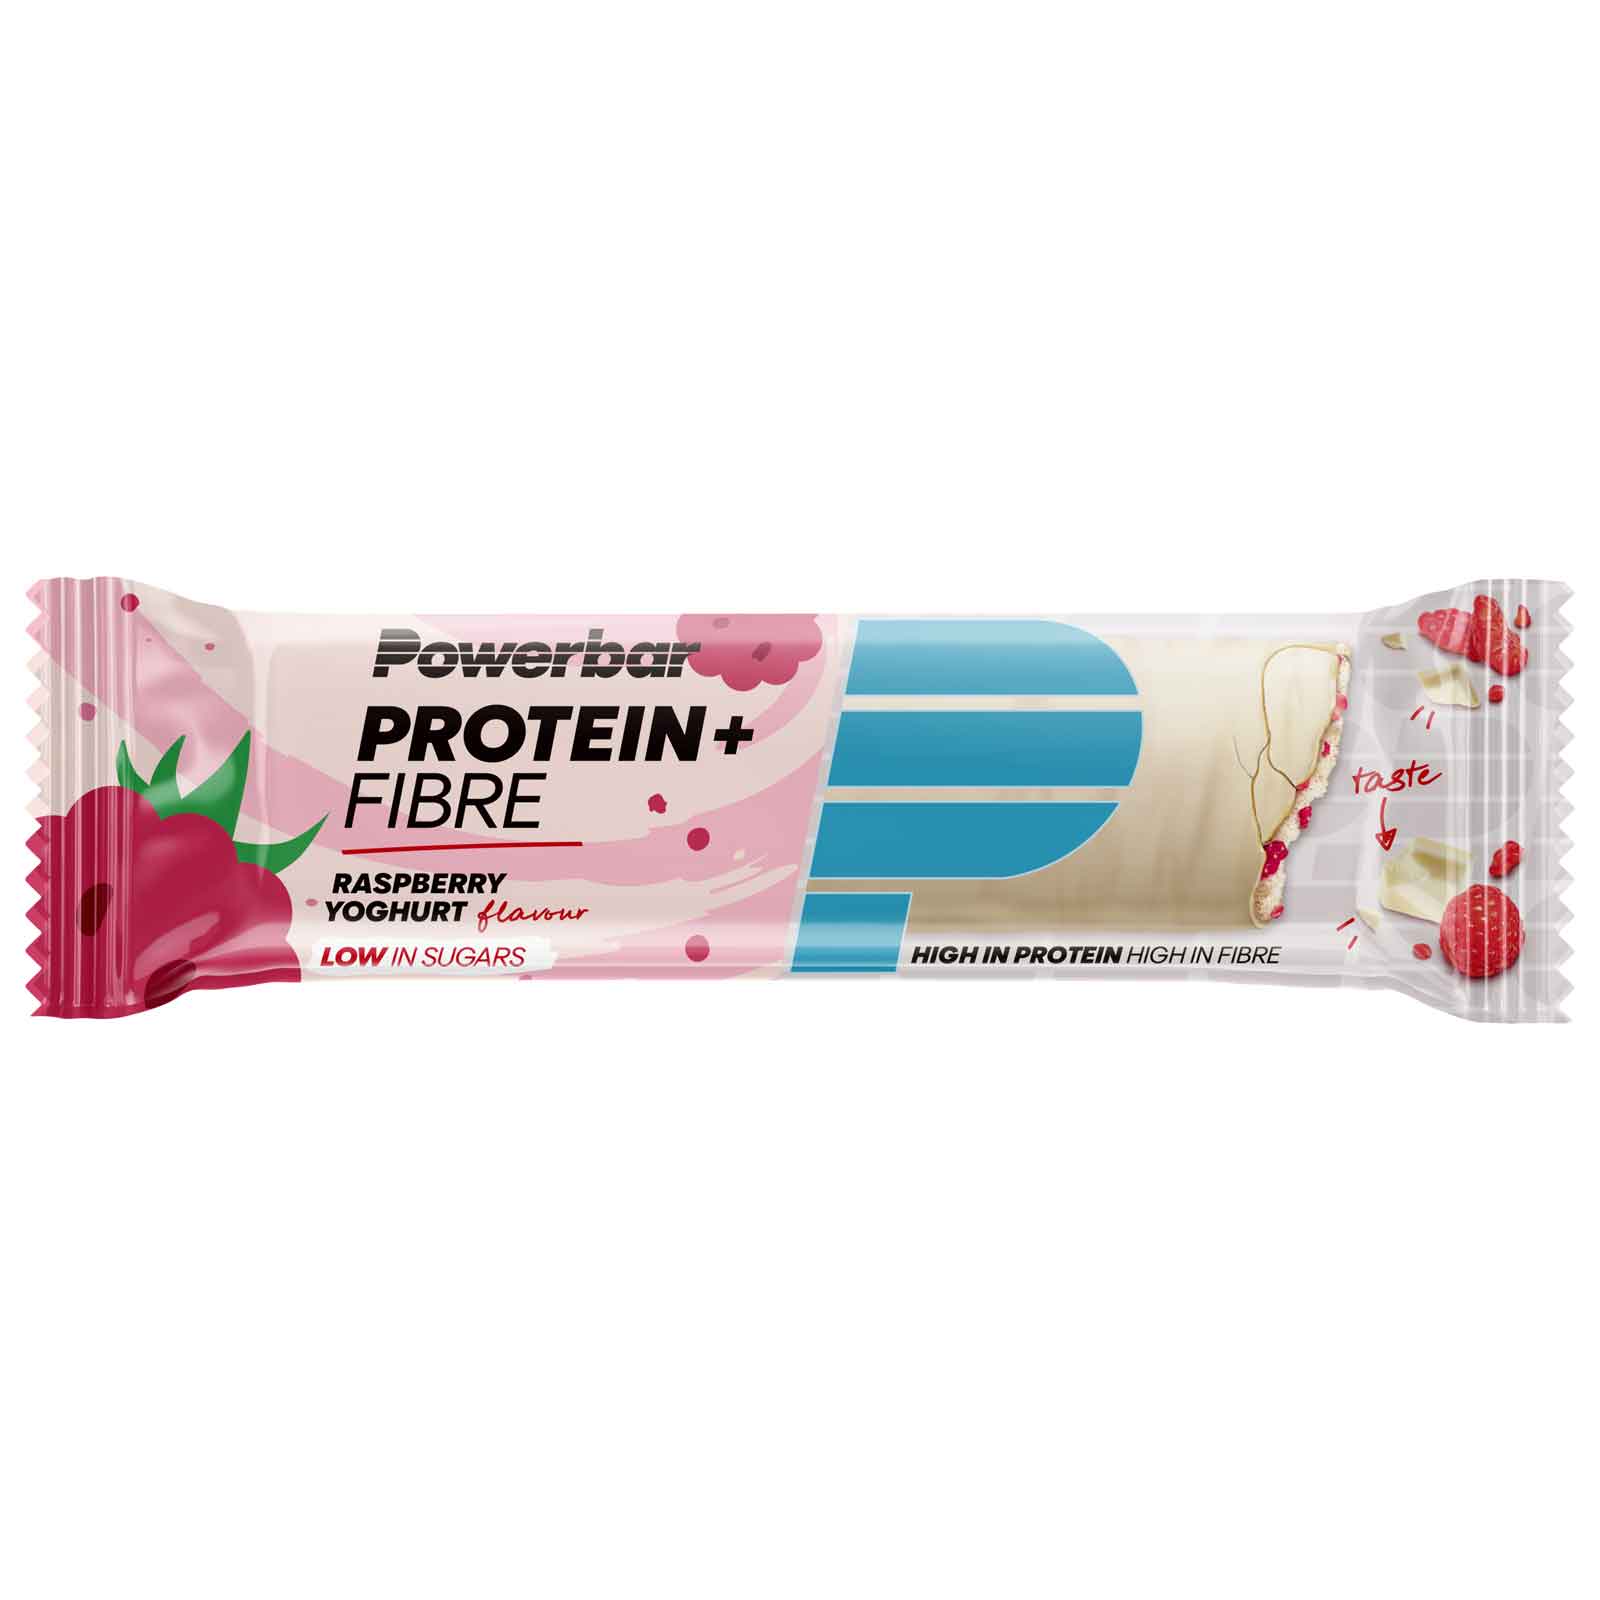 Produktbild von Powerbar Protein Plus Fibre - Eiweiß-Riegel - 4x35g